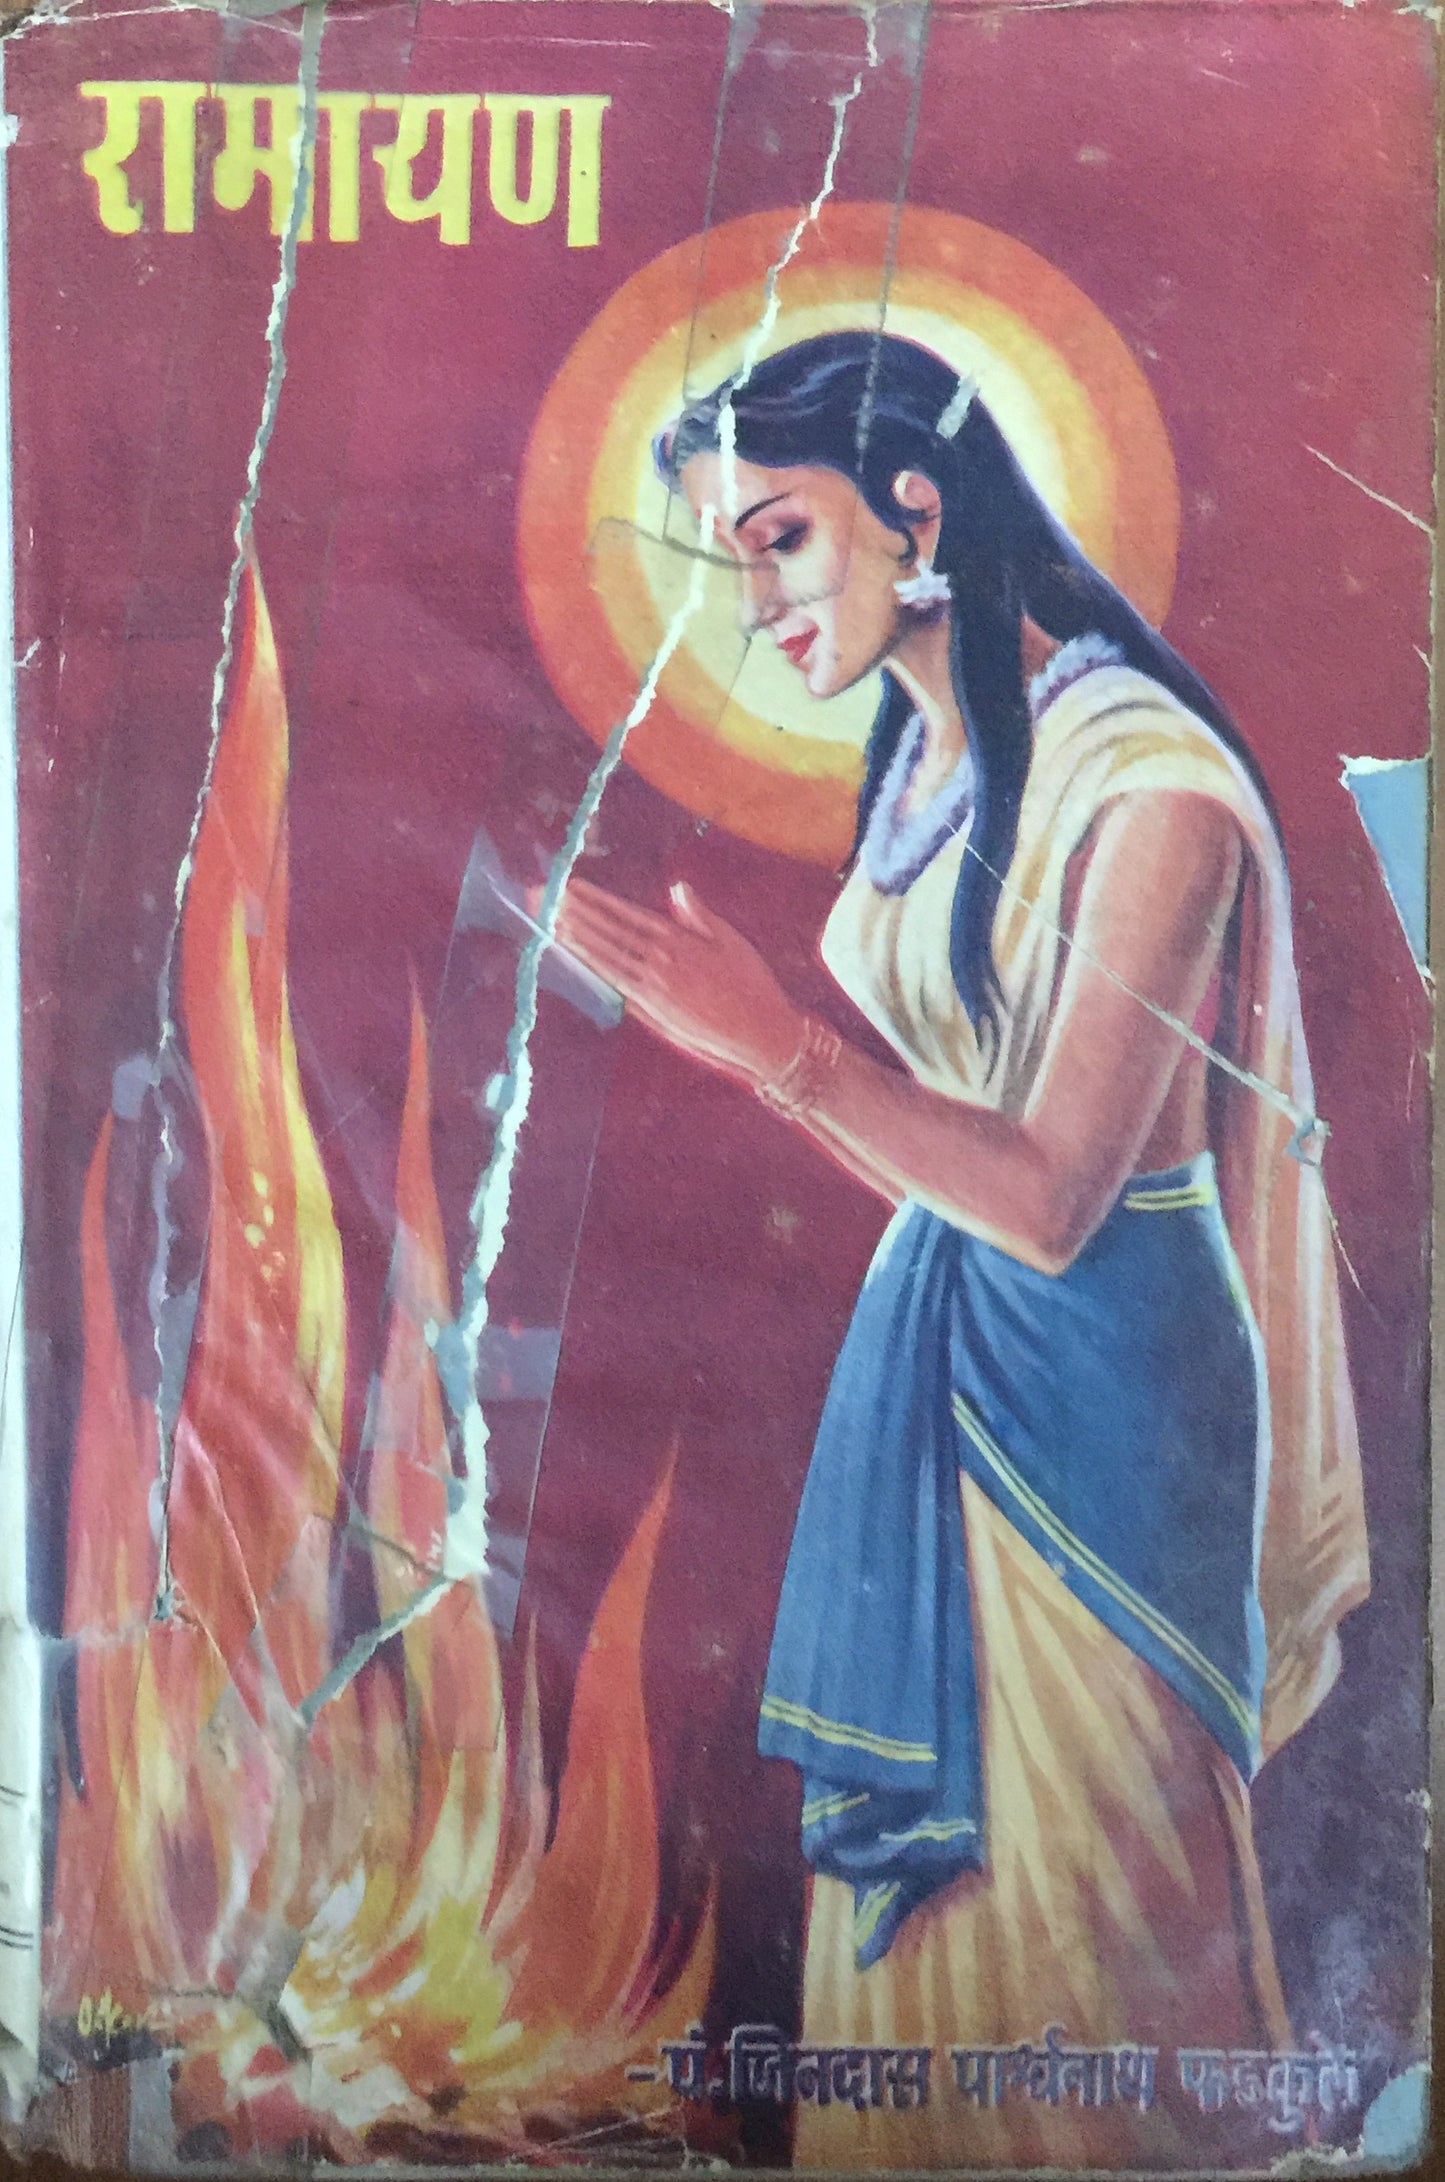 Ramayan by Pt Jindas Parshwanath Phadkule (Jan 1965)